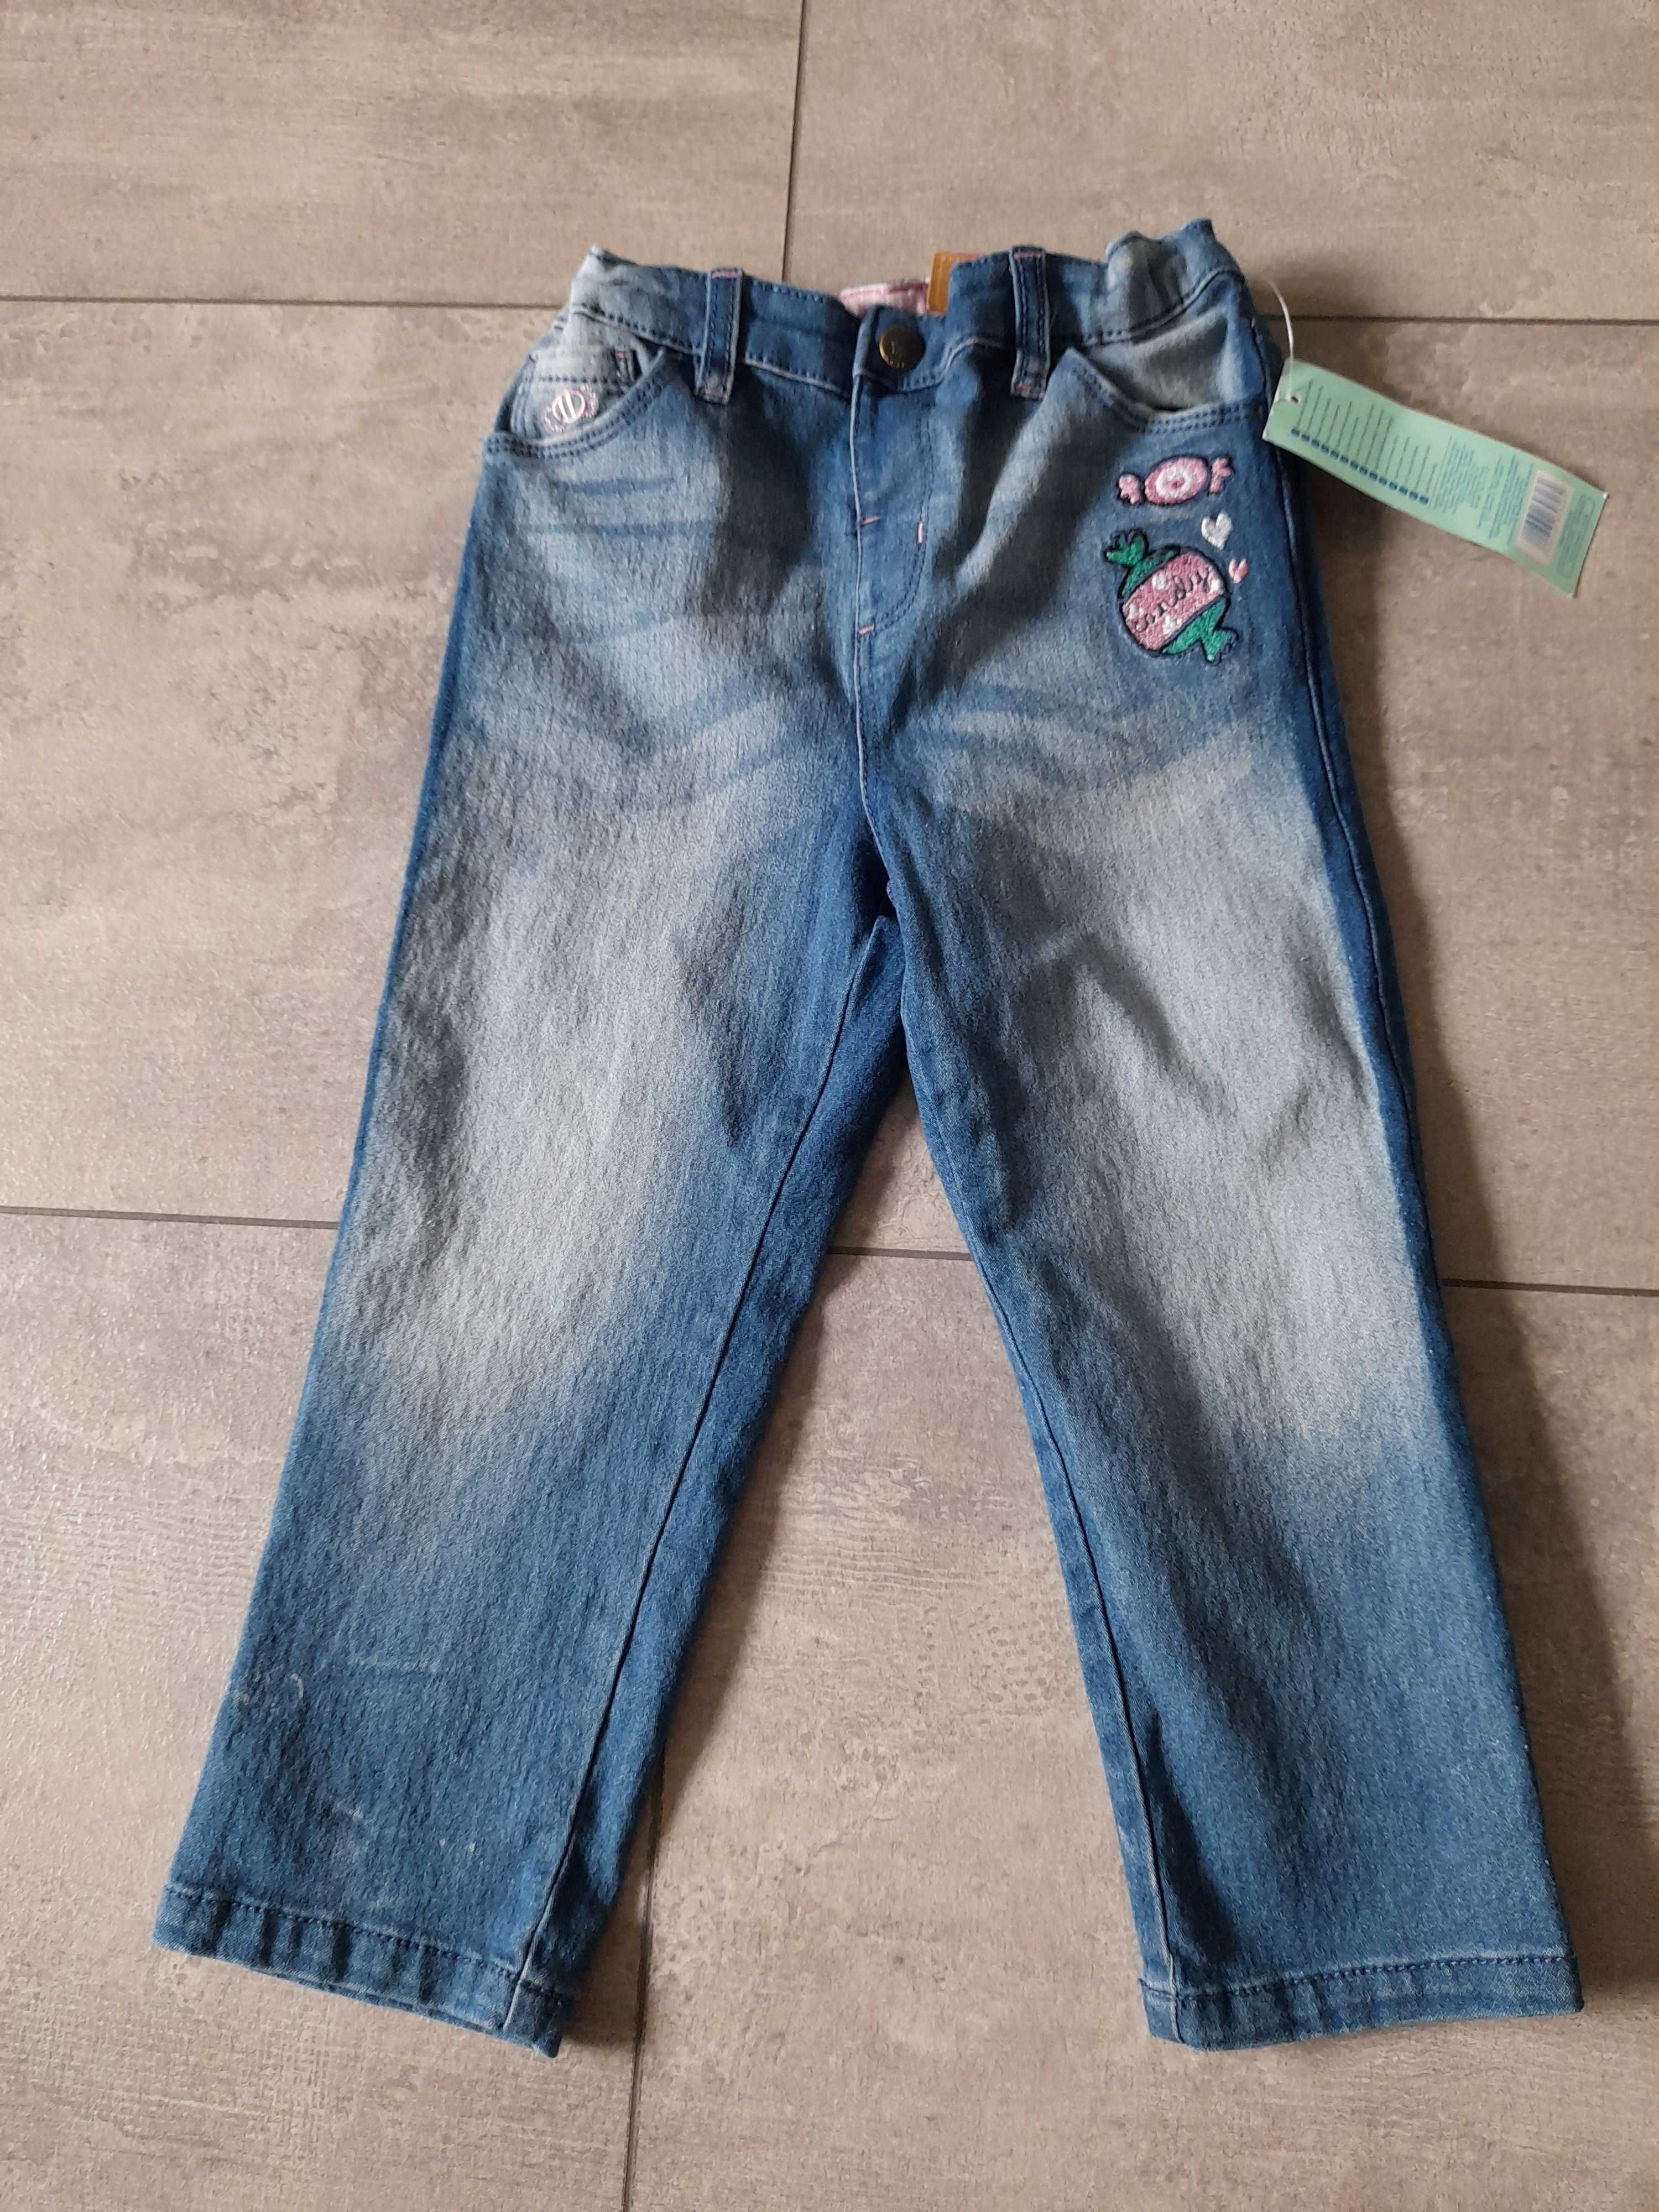 nowe jeansy/jegginsy, 98, so cute, z metką, w środku regulacja pasa